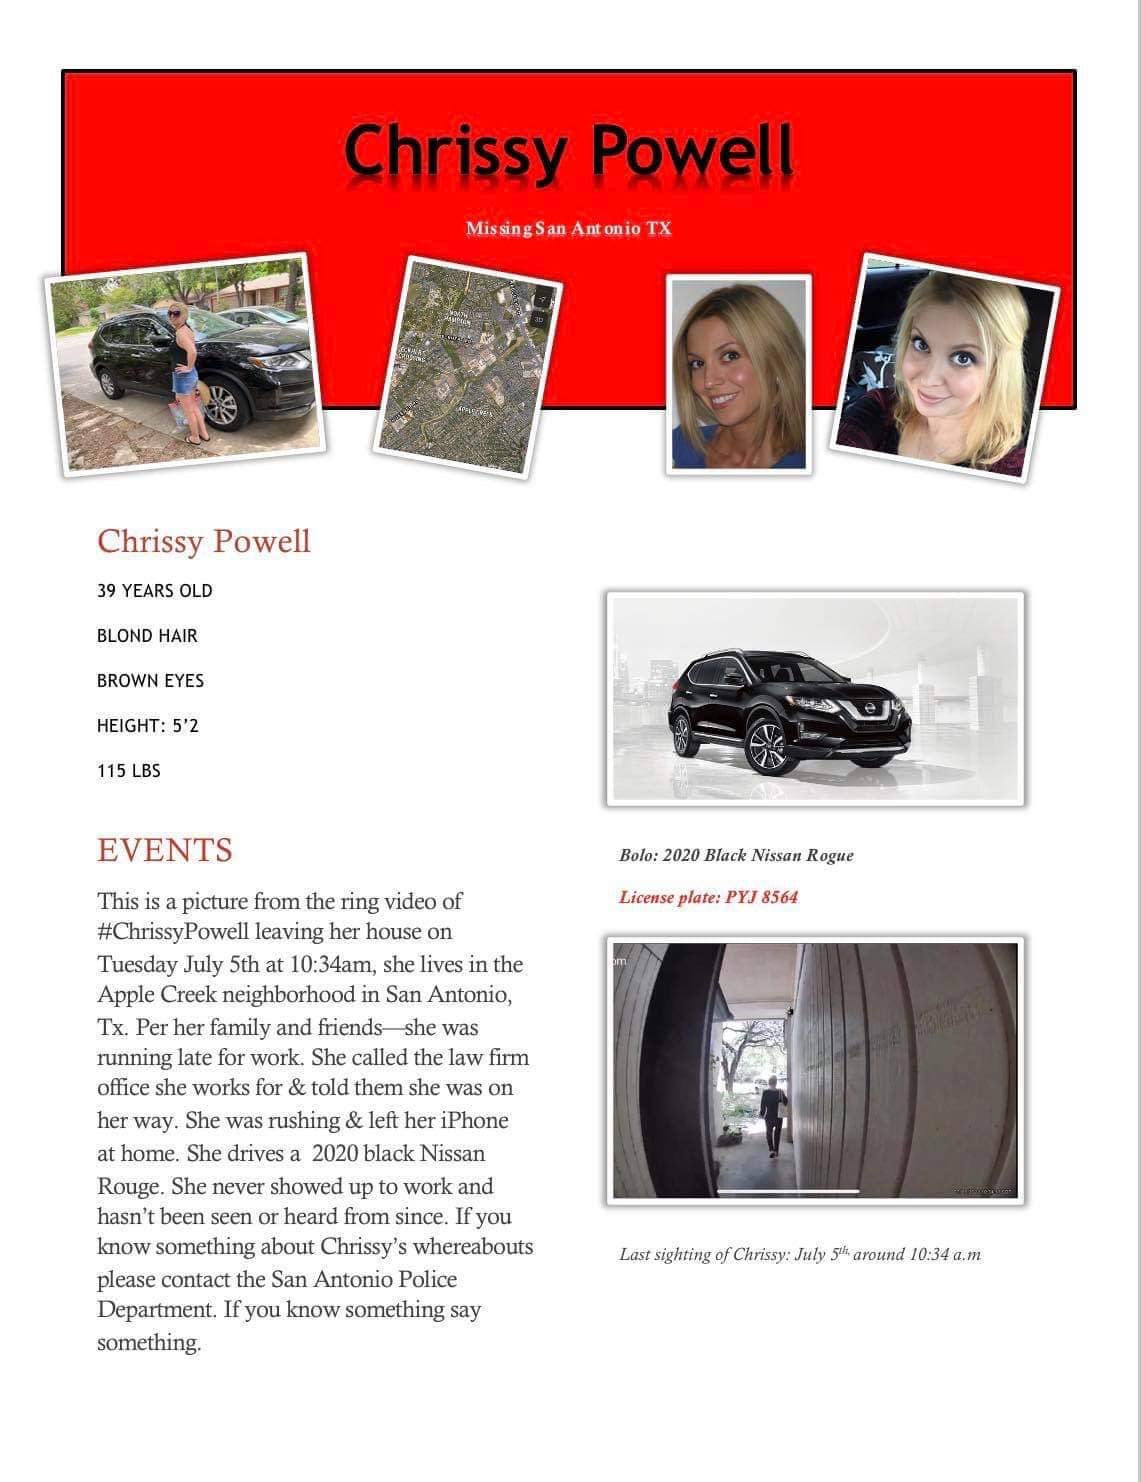 El folleto de persona desaparecida de Chrissy Powell, de 39 años, describe el último lugar conocido en el que fue vista con vida y el Nissan Rogue negro 2020 que conducía